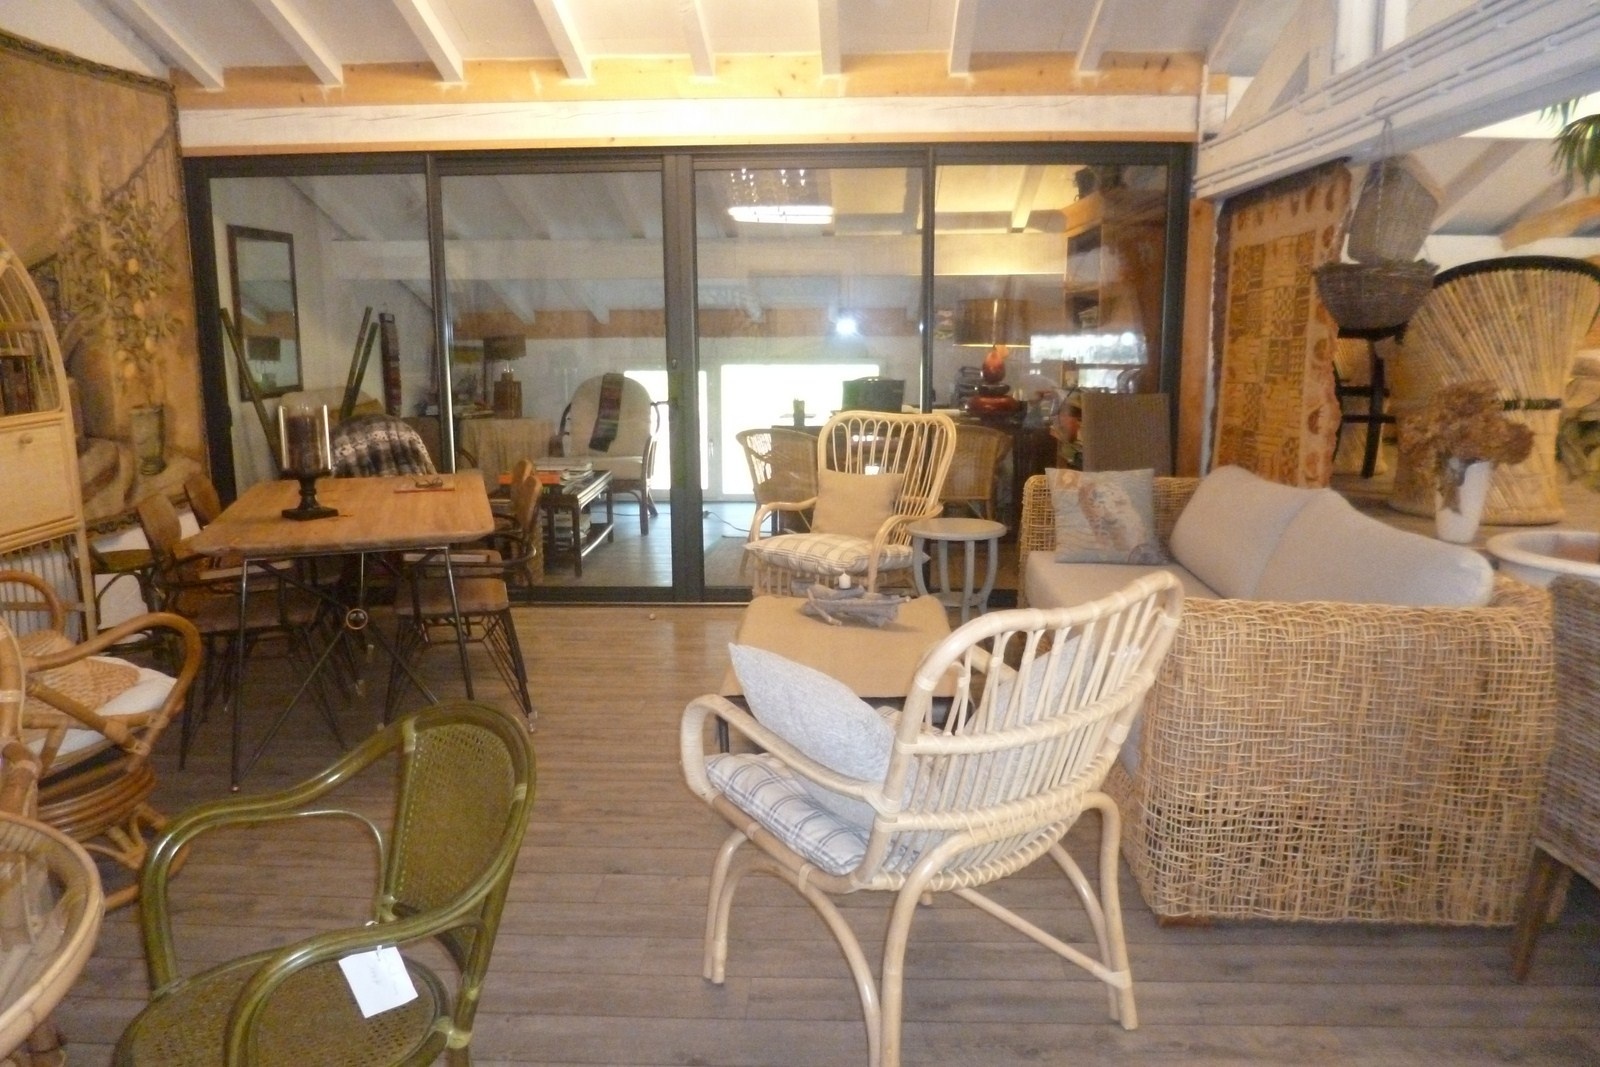 Loveuse grise avec coussins - Rotin du Pacific  Vente de meubles en rotin,  en bambou, en bananier au Pays Basque. Meuble sur mesure.